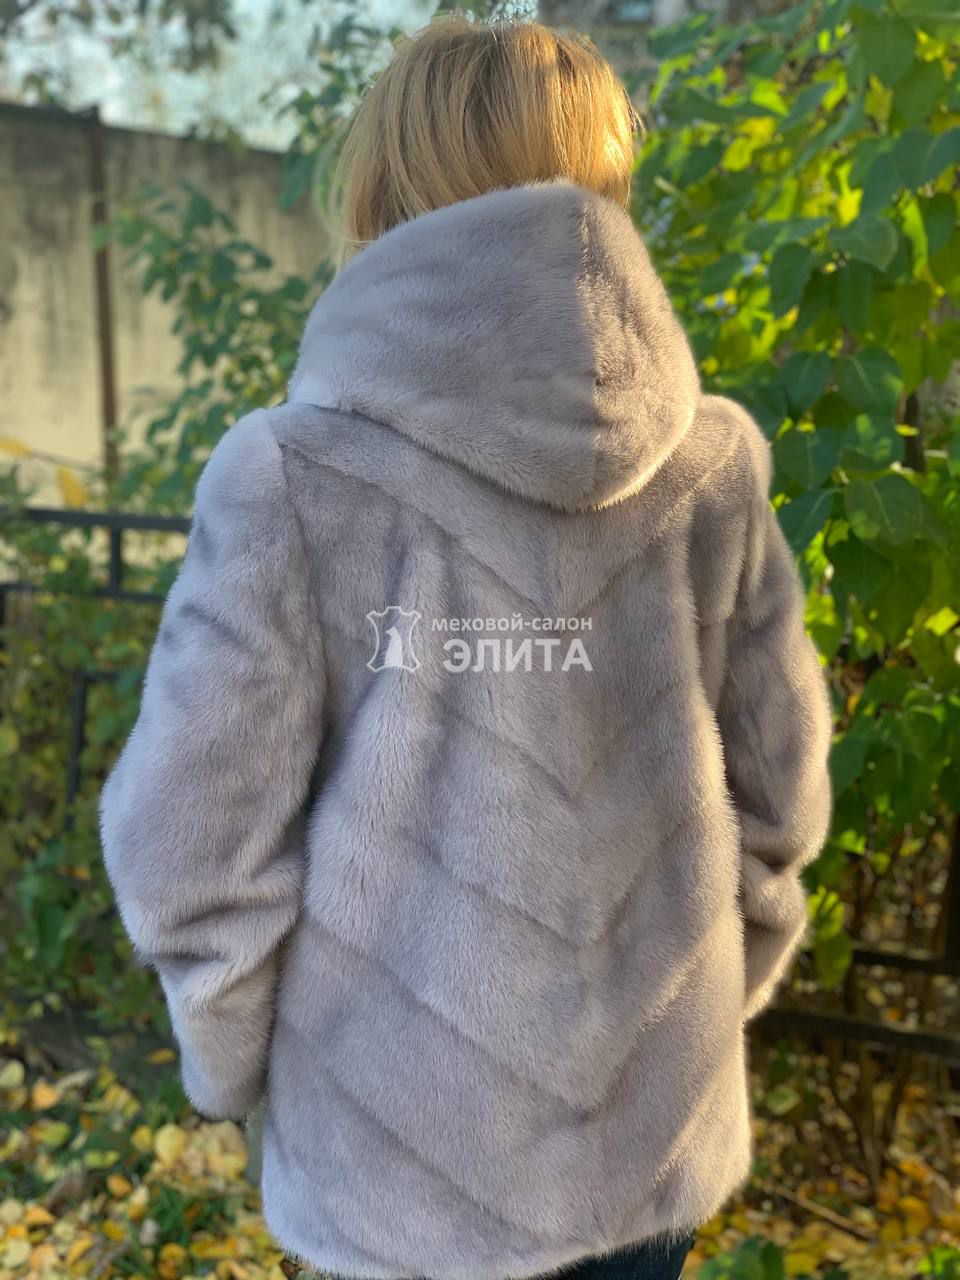 Норковая куртка м. S-2518 р-р 46-54, цена 120500 рублей в интернет-магазине кожи и меха ЭЛИТА. Вид 2